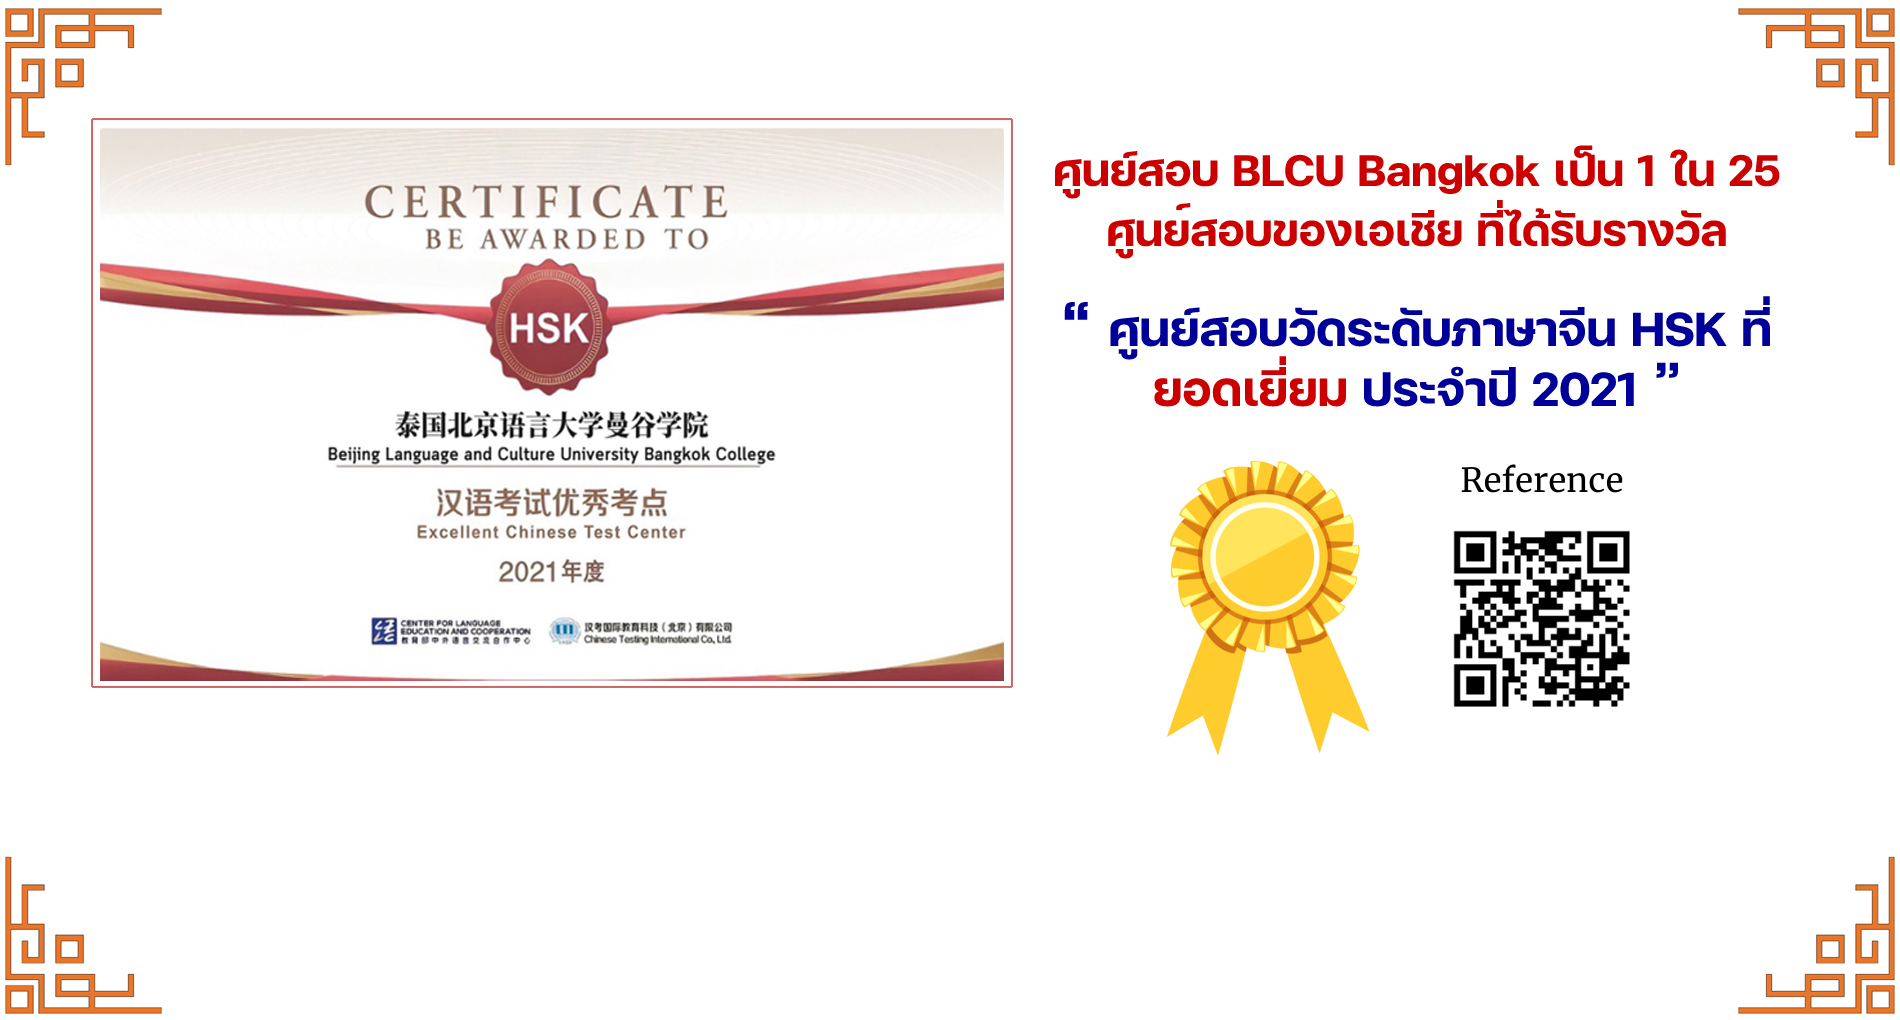 ศูนย์สอบ BLCU Bangkok เป็น 1 ใน 25 ศูนย์สอบของเอเชีย ที่ได้รับรางวัล ศูนย์สอบวัดระดับภาษาจีน HSK ที่ยอดเยี่ยม ประจำปี 2021